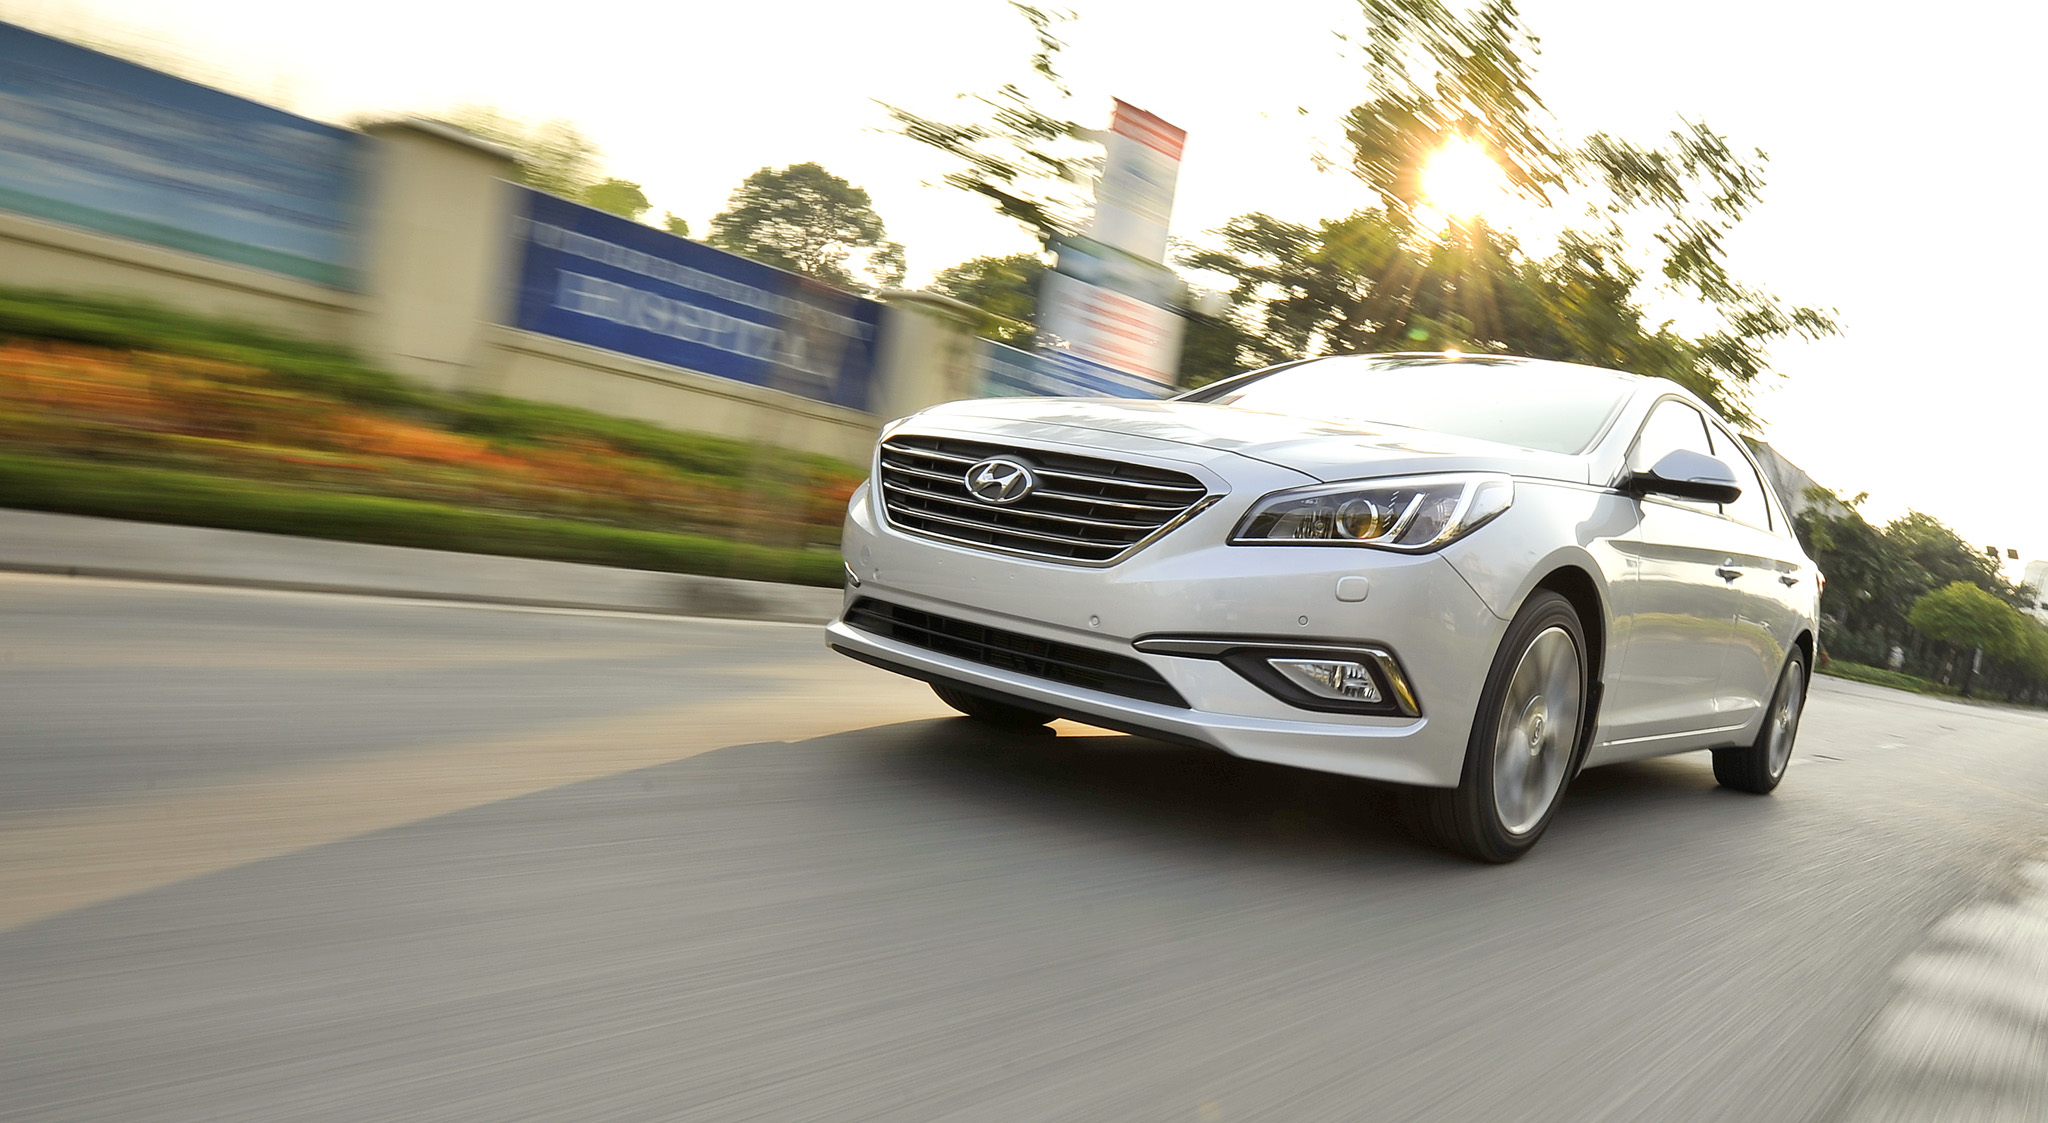 Hình ảnh Hyundai giảm giá Sonata xuống còn dưới 1 tỷ đồng số 1